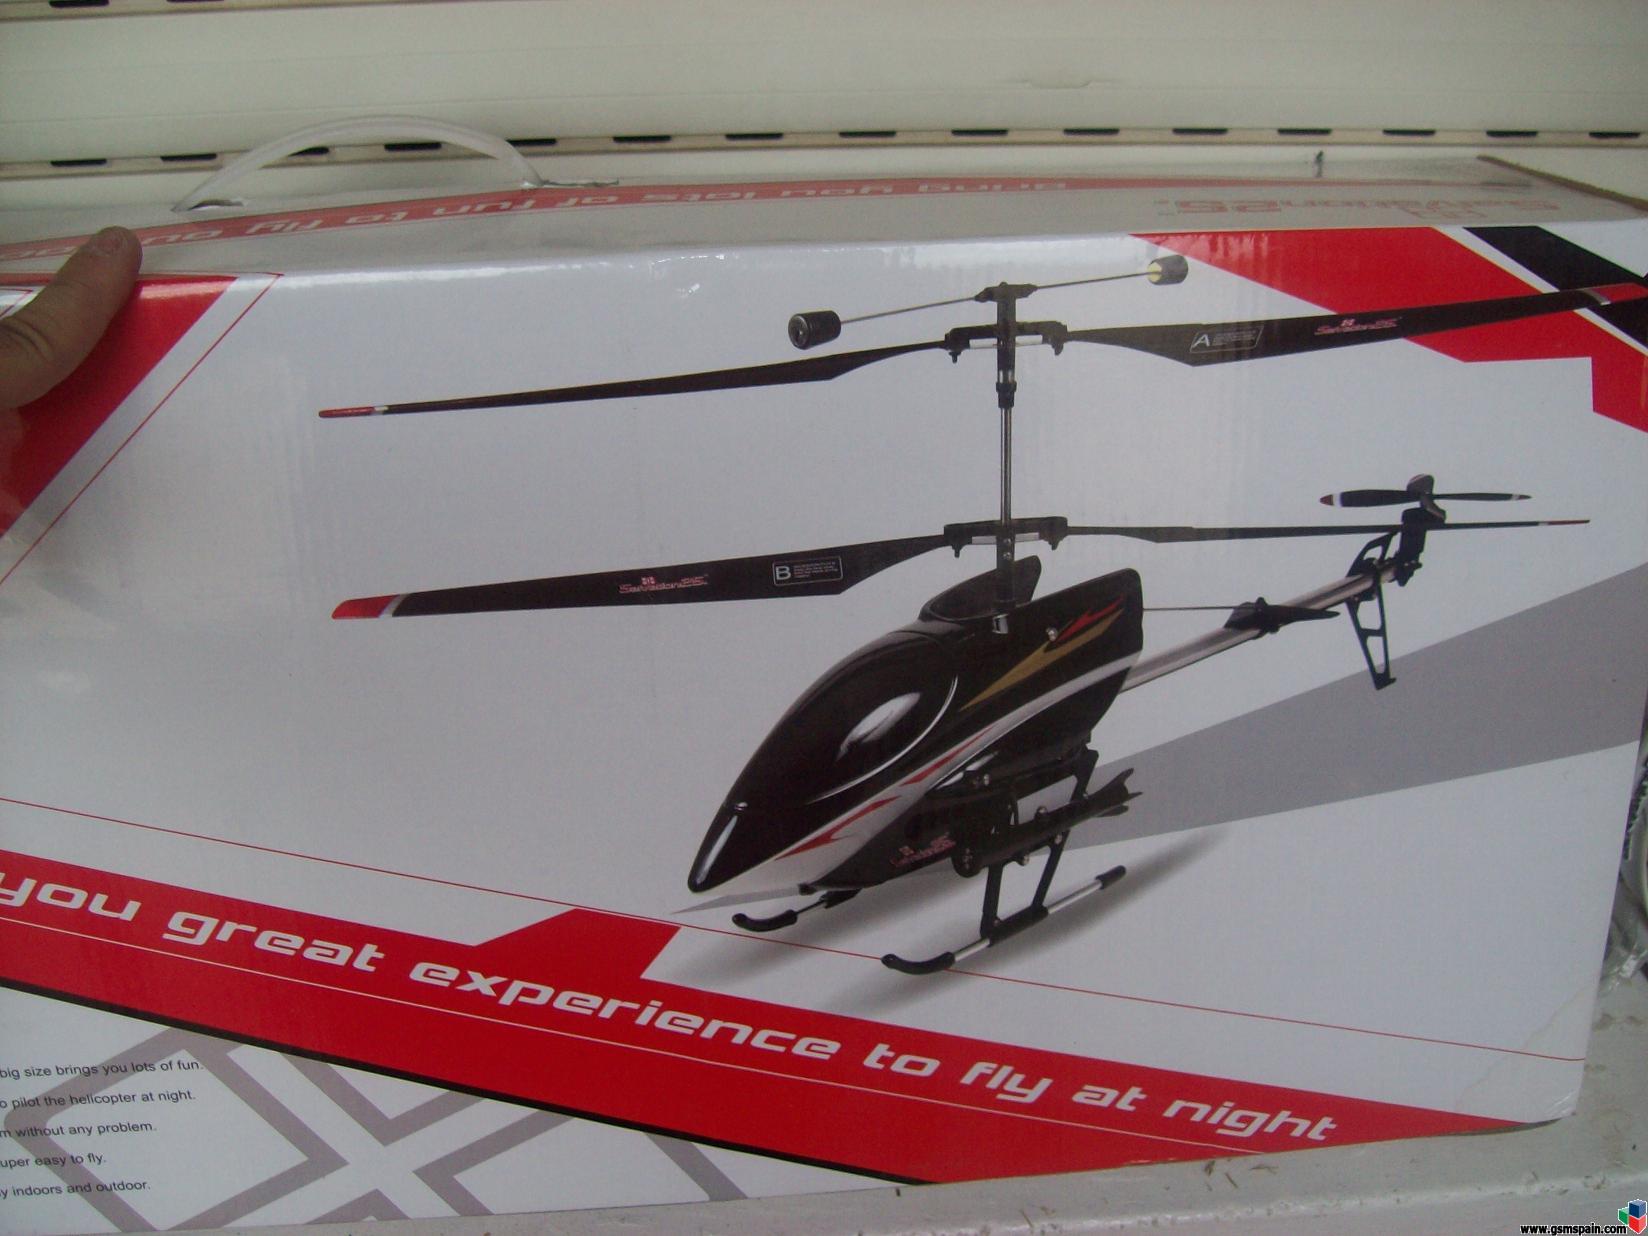 vendo helicoptero de rc nuevo con caja 50 euros 60cm dsde la cola a la cabina